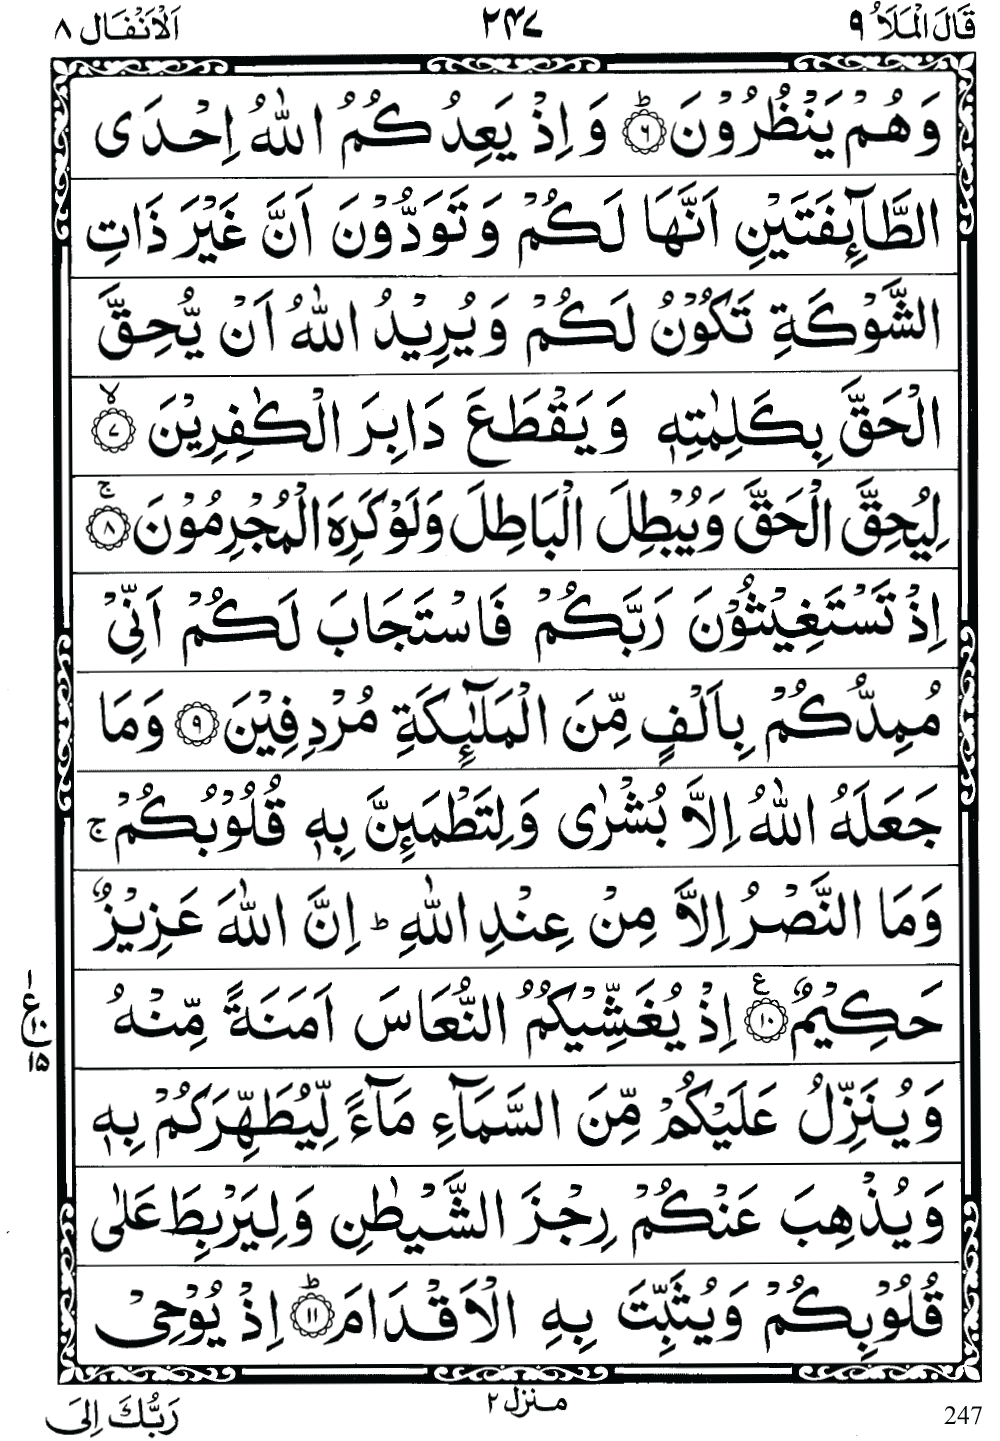 Quran Para 9 (Qal al mala) 9th Para Recite Online and PDF